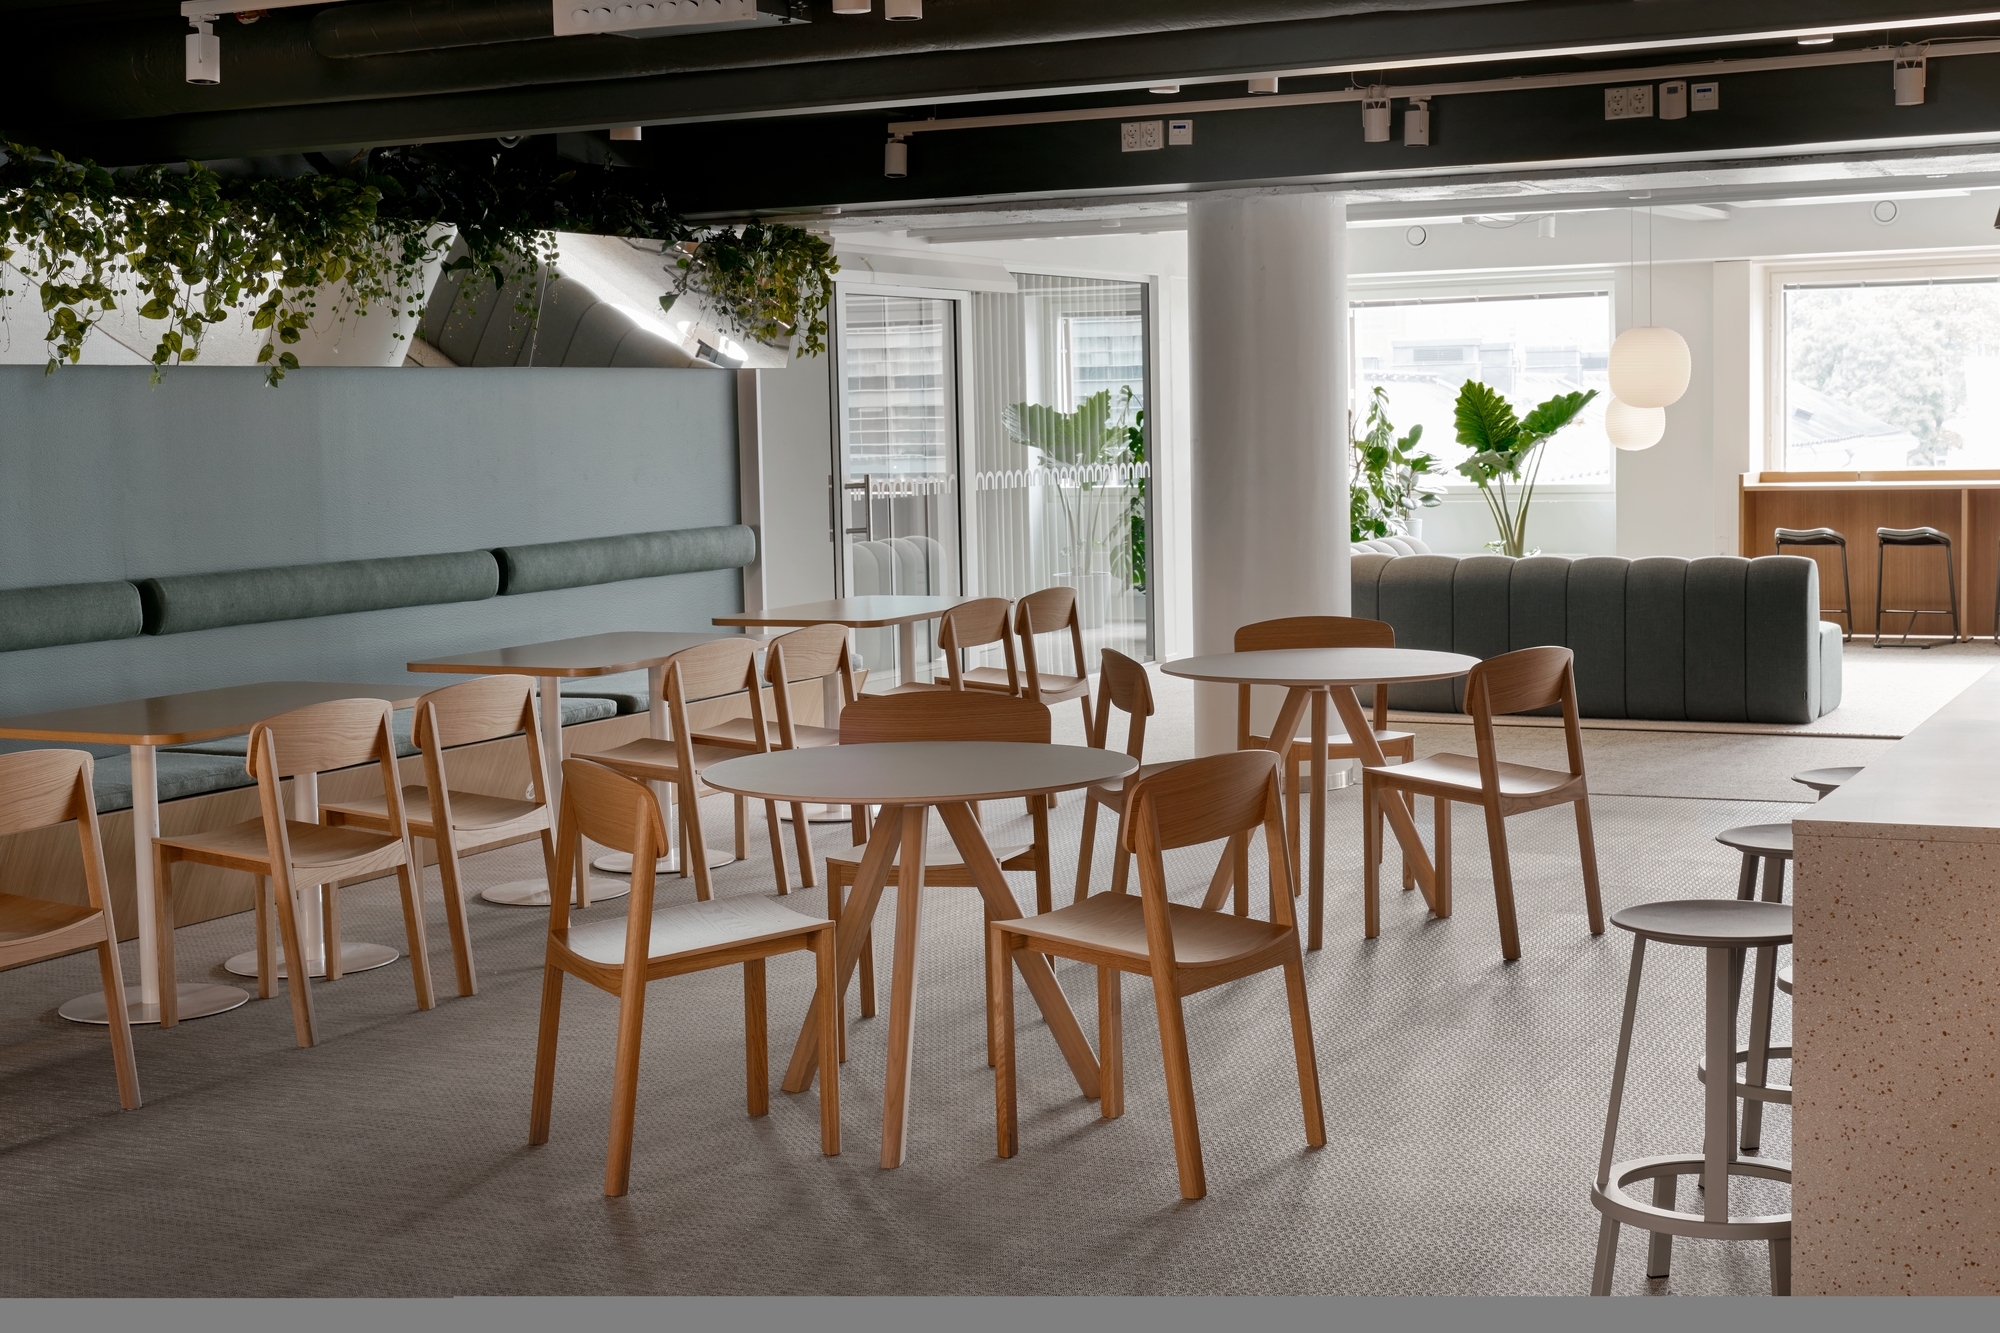 图片[6]|世邦魏理仕办公室-赫尔辛基|ART-Arrakis | 建筑室内设计的创新与灵感